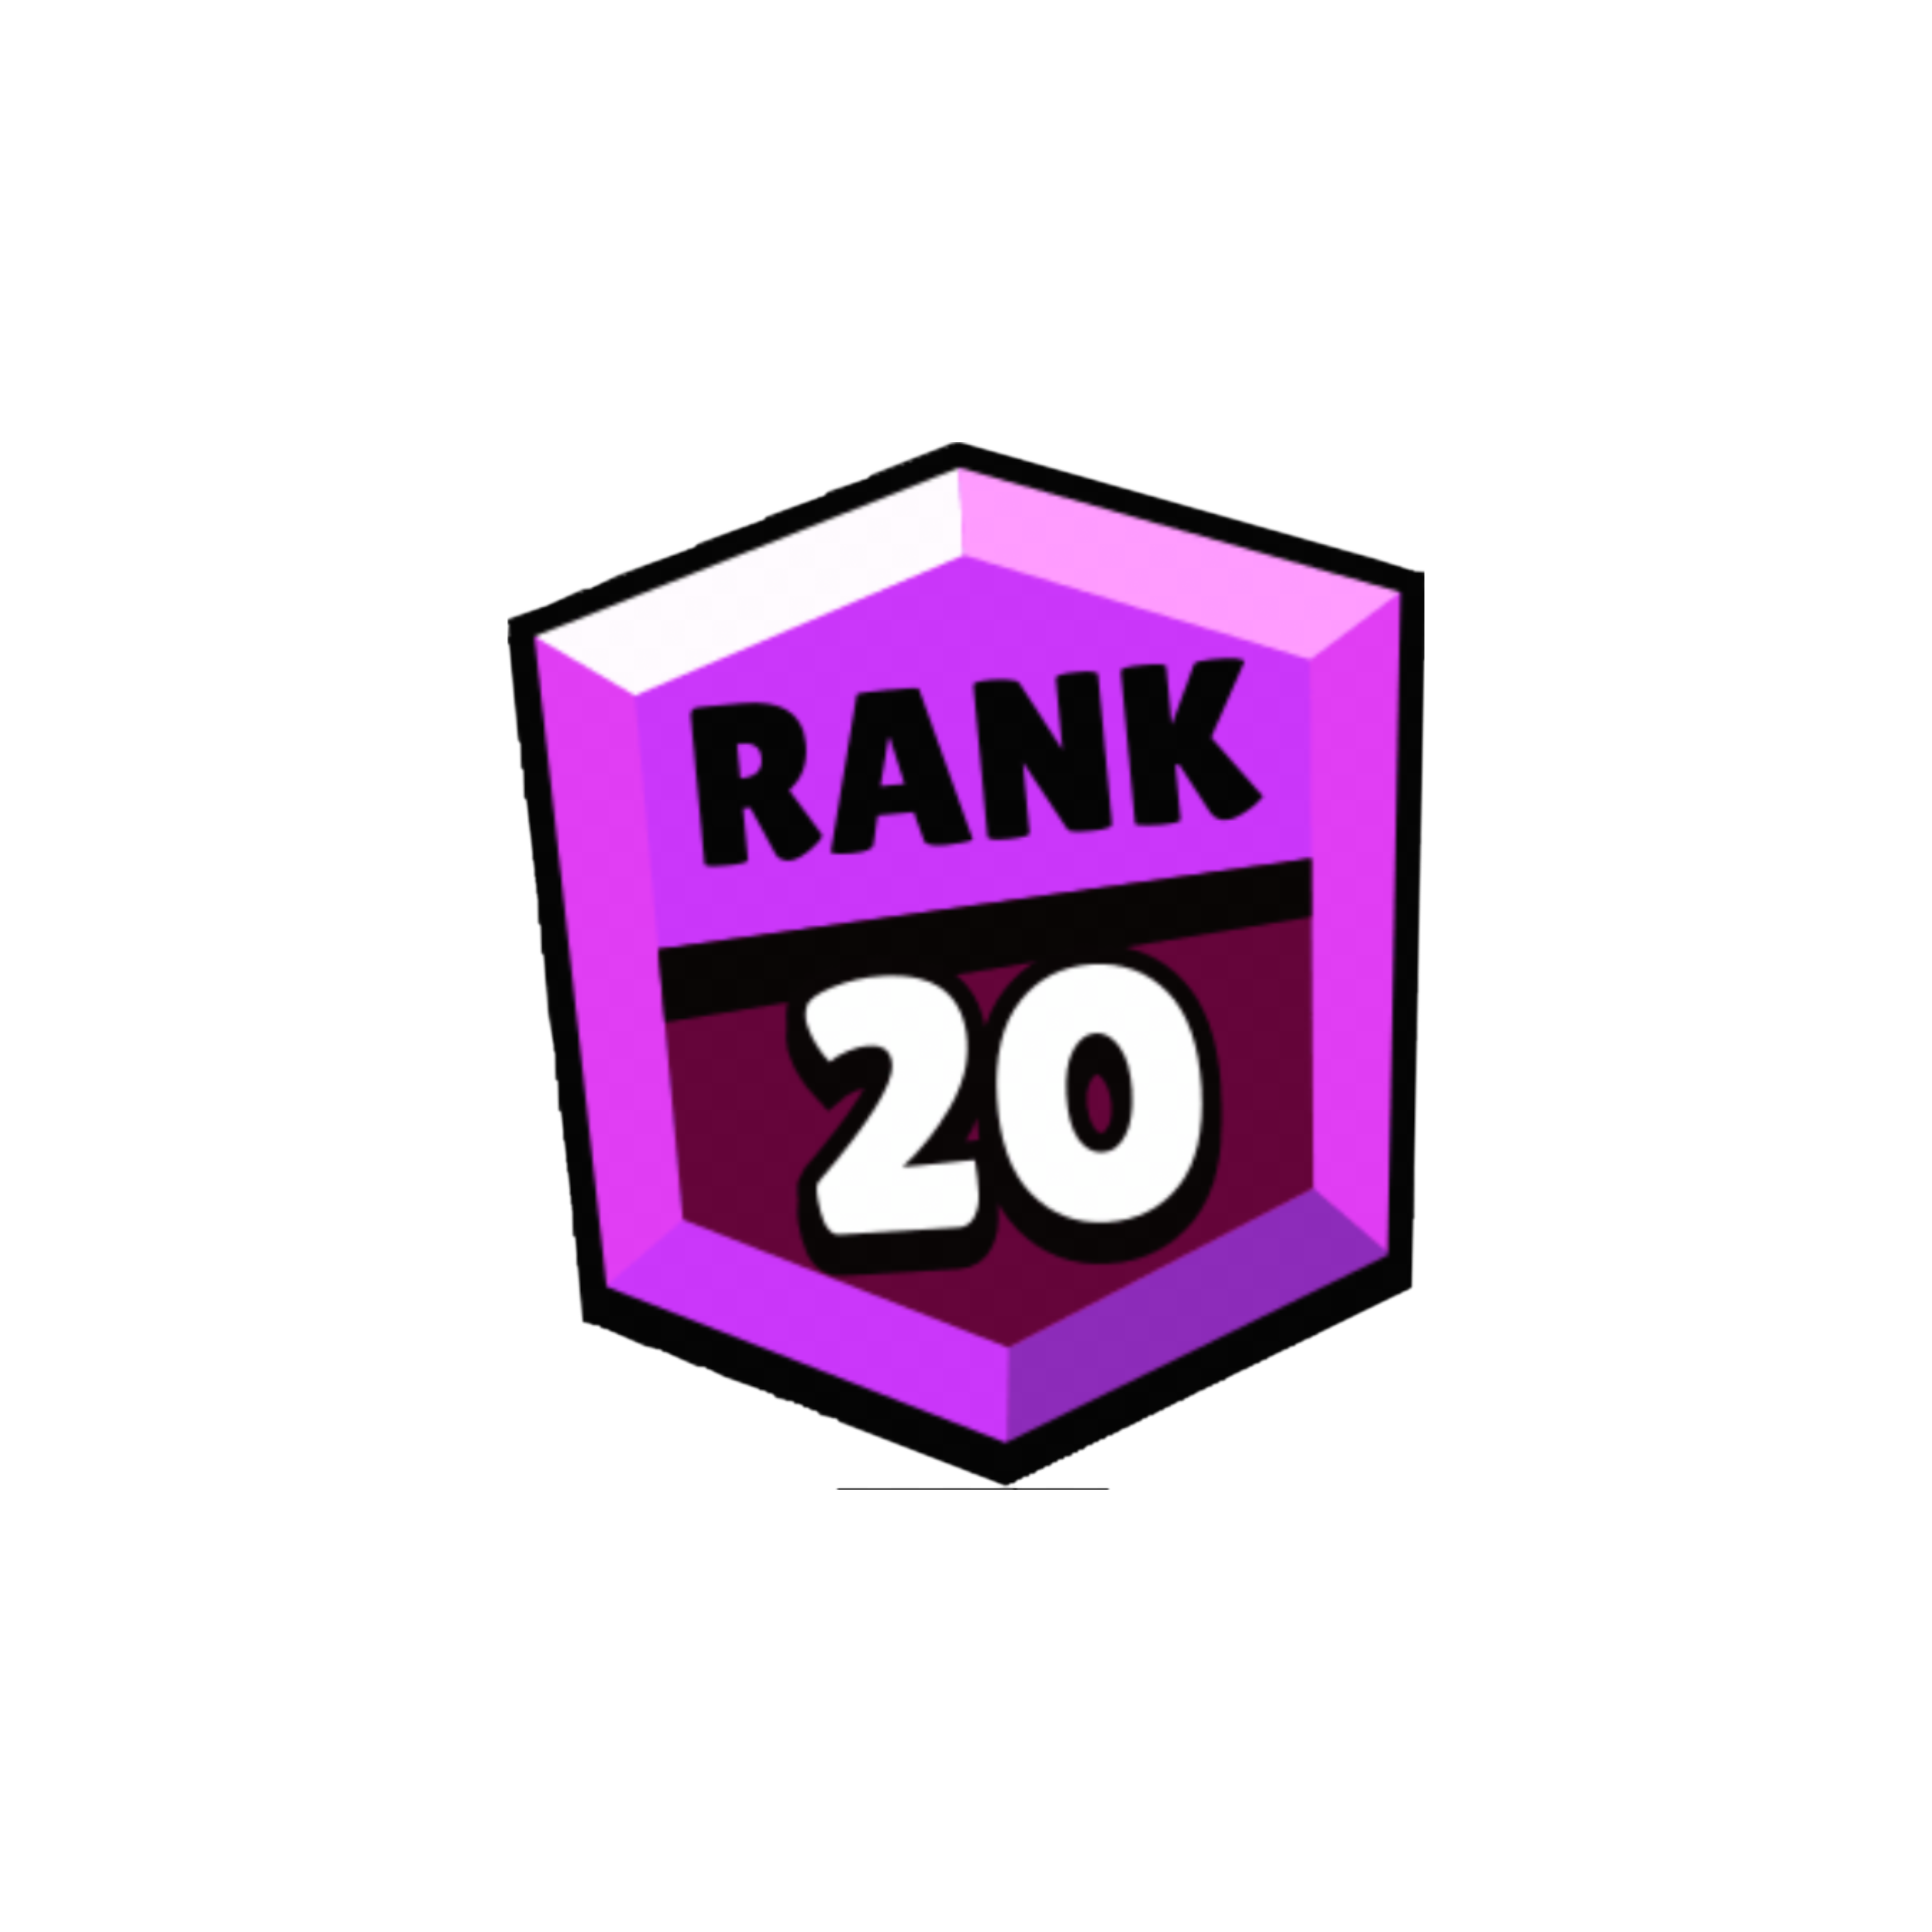 Ranking 20. 20 Ранг без фона. 20-25 Ранг. 20 Ранг на белом фоне. 20 Ранг в БРАВЛ.